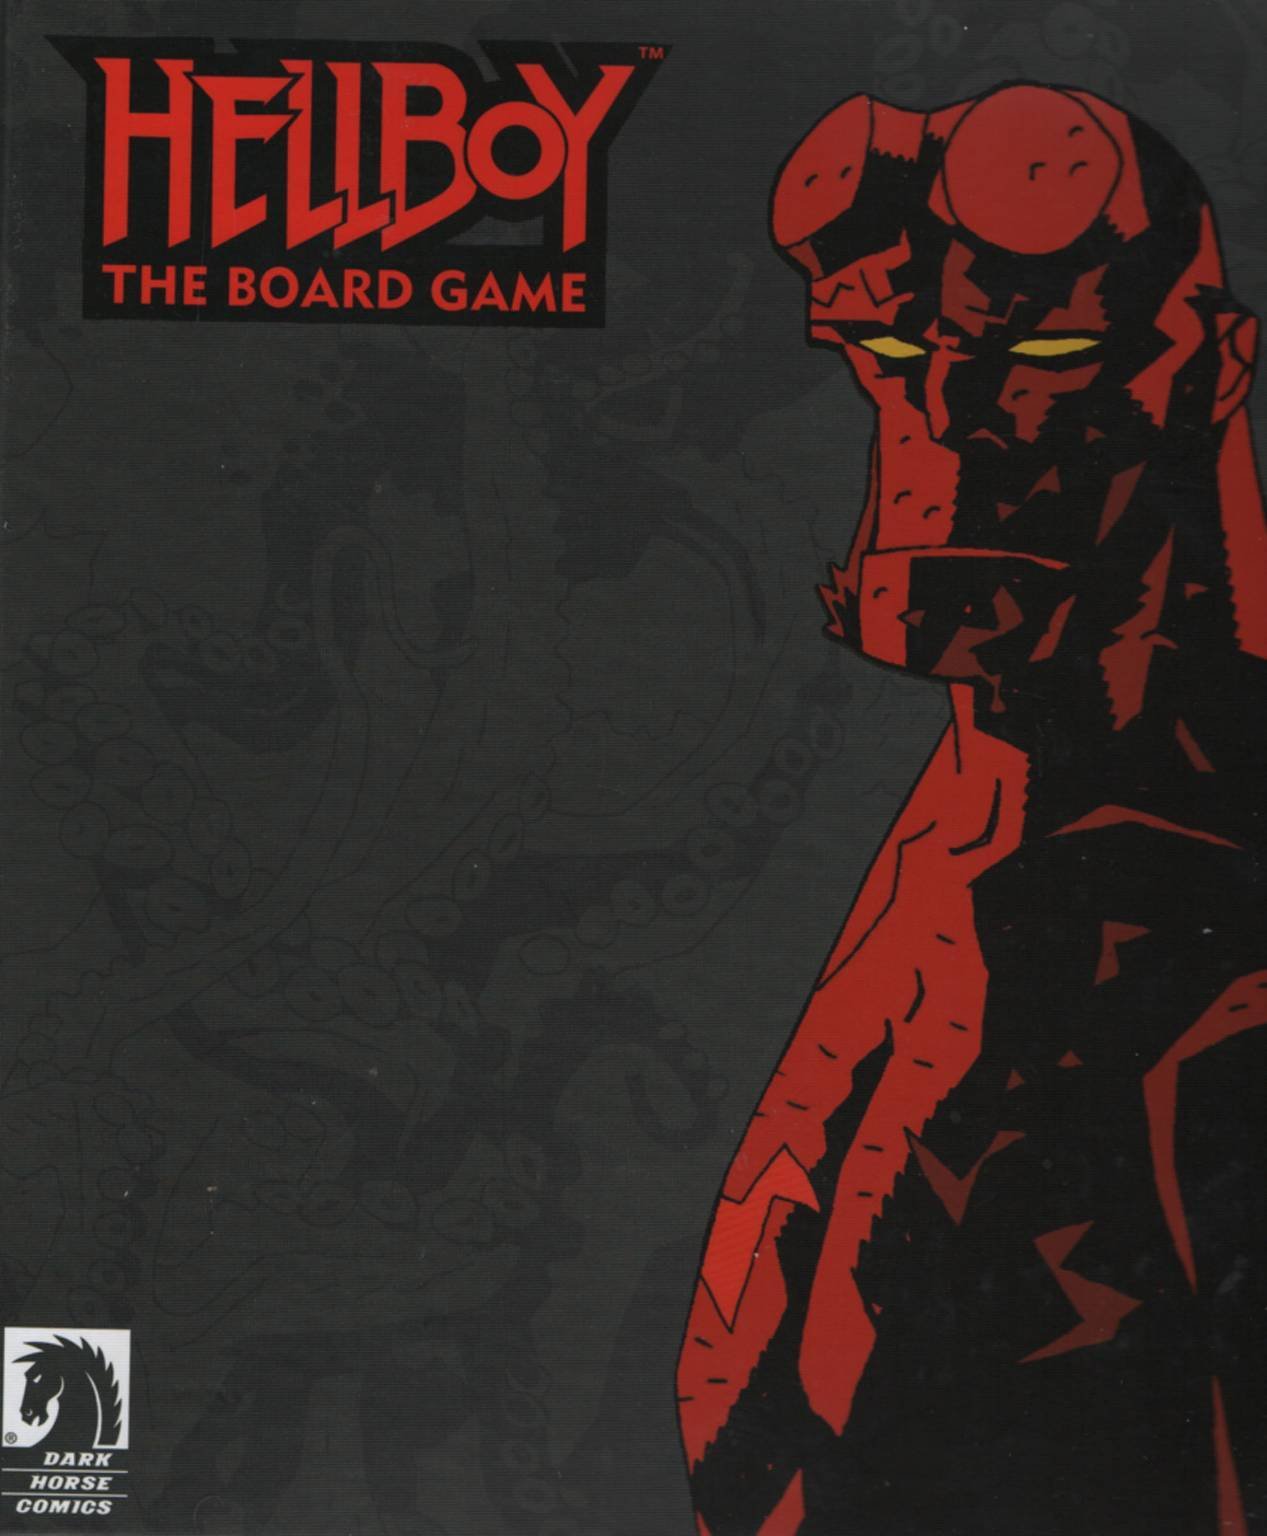 Immagine di Hellboy: The Board Game. La recensione del gioco da tavolo